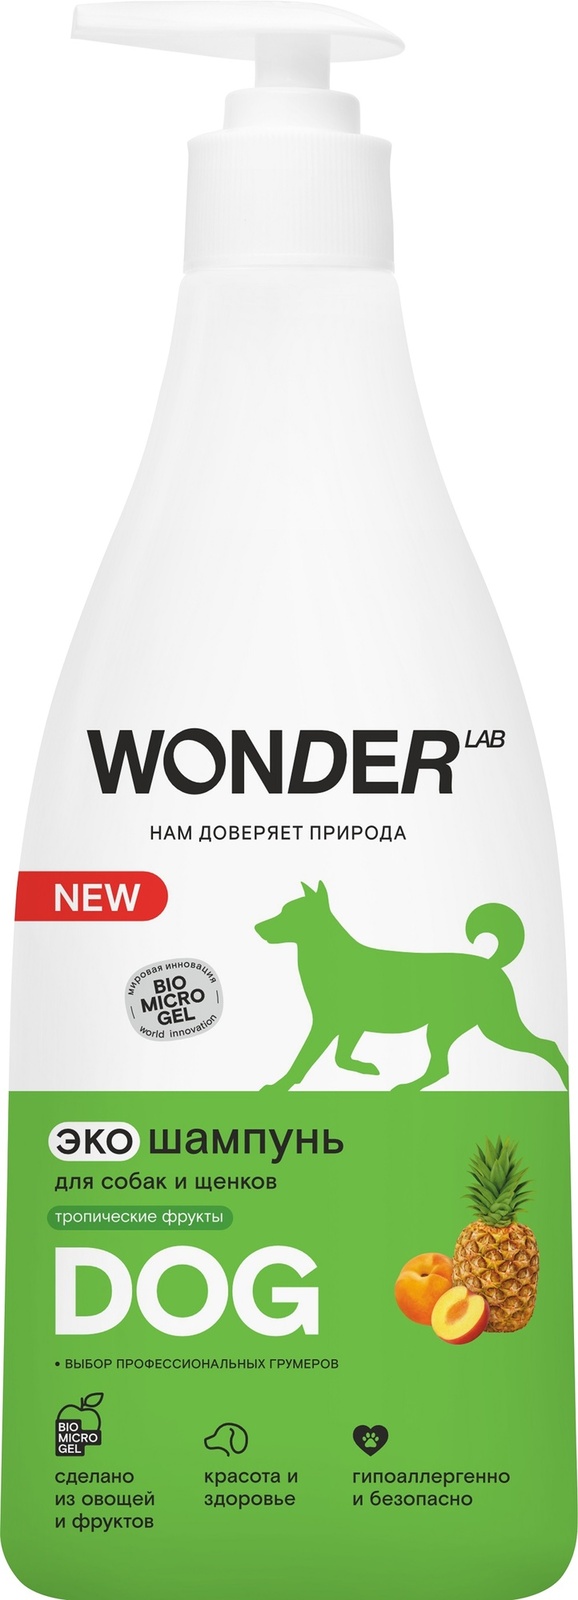 Wonder lab шампунь для собак экологичный, с ароматом тропических фруктов (550 г)